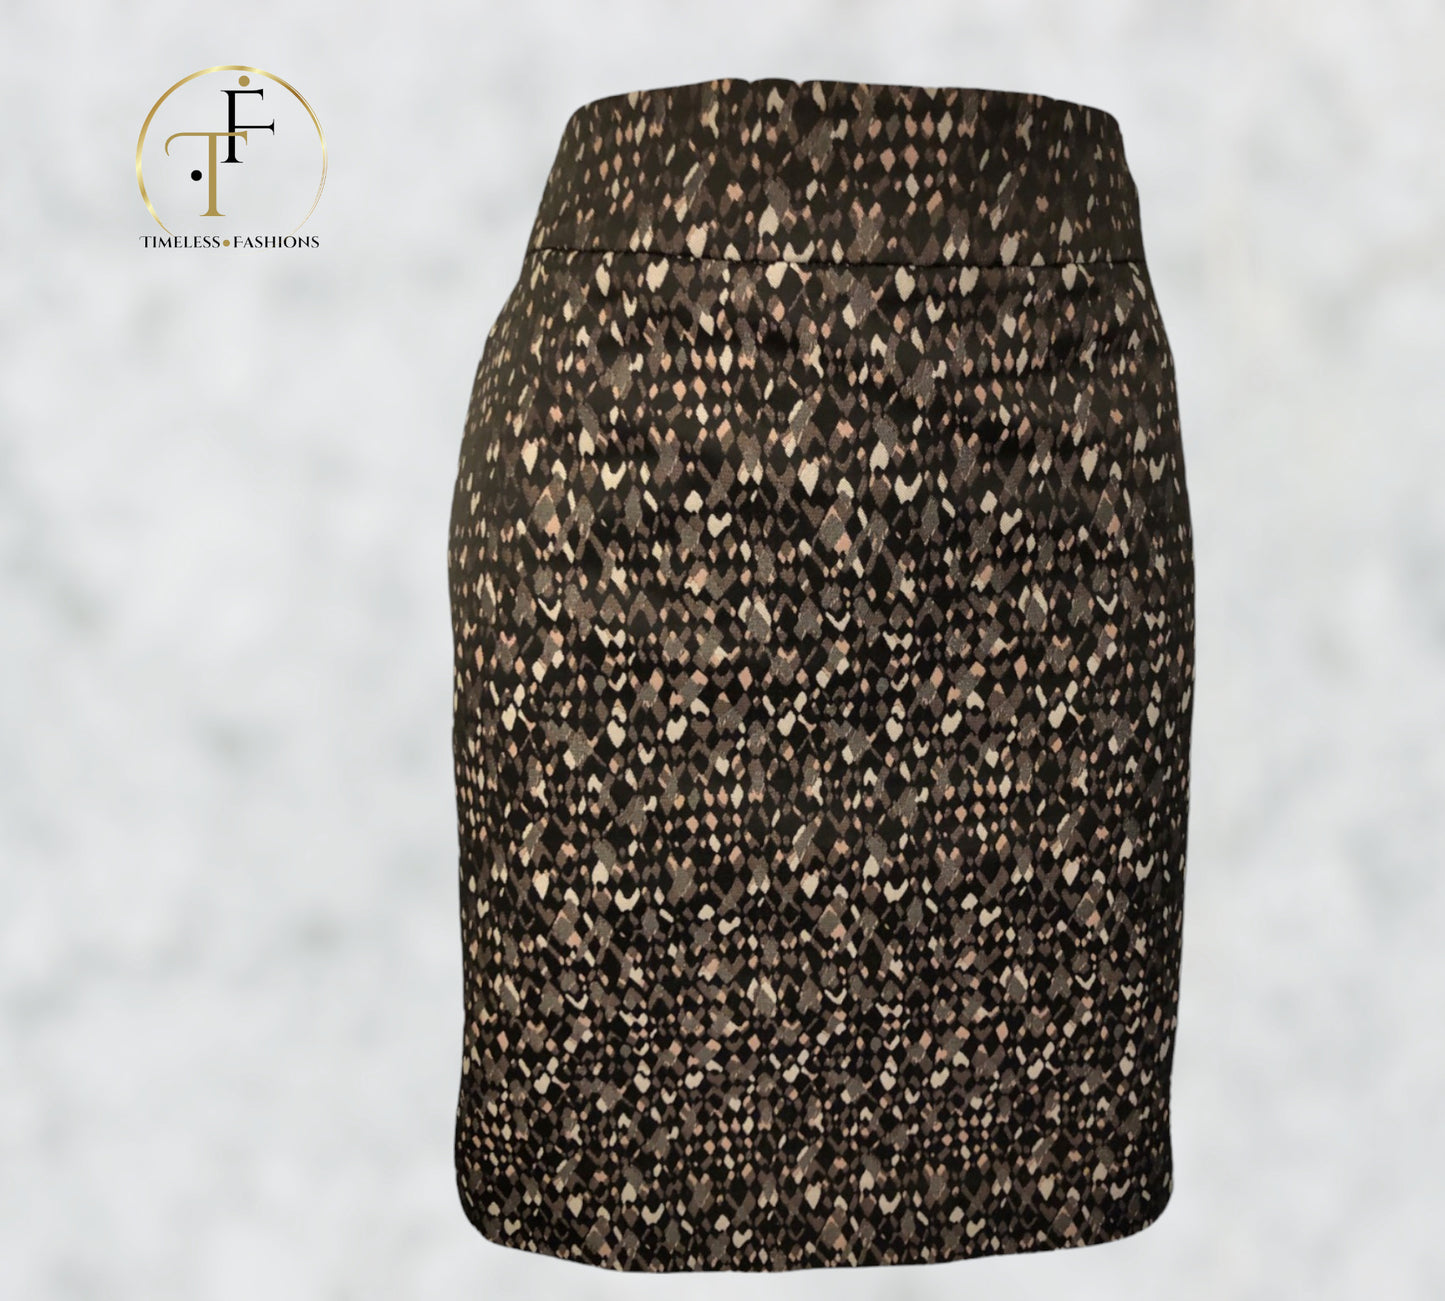 DKNY Geometric Patterned Black Mini Pencil Skirt Size UK 10 US 6 EU 38 Timeless Fashions